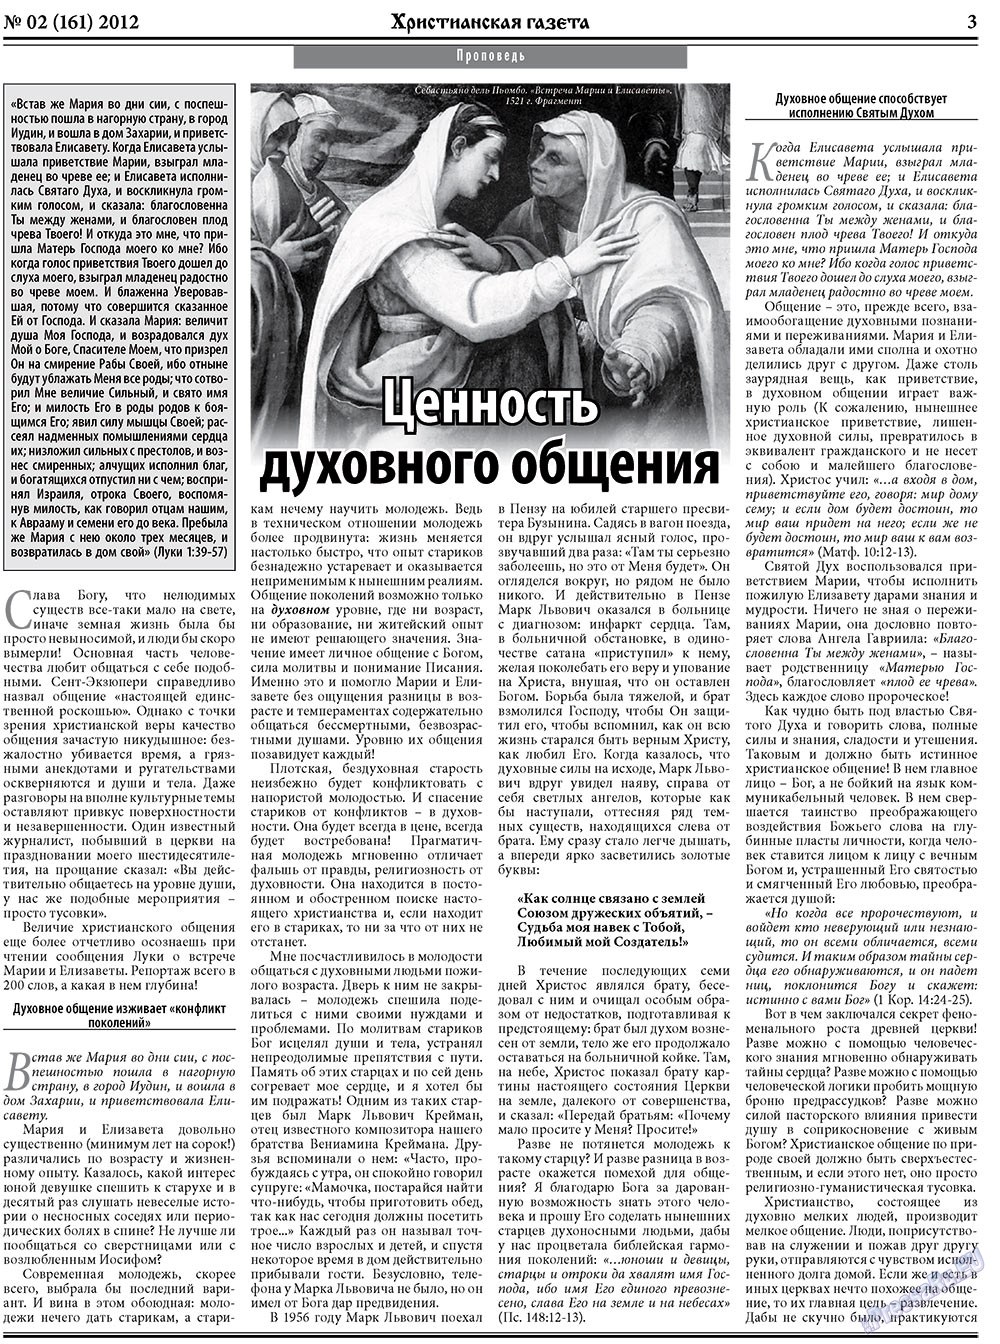 Христианская газета (газета). 2012 год, номер 2, стр. 3